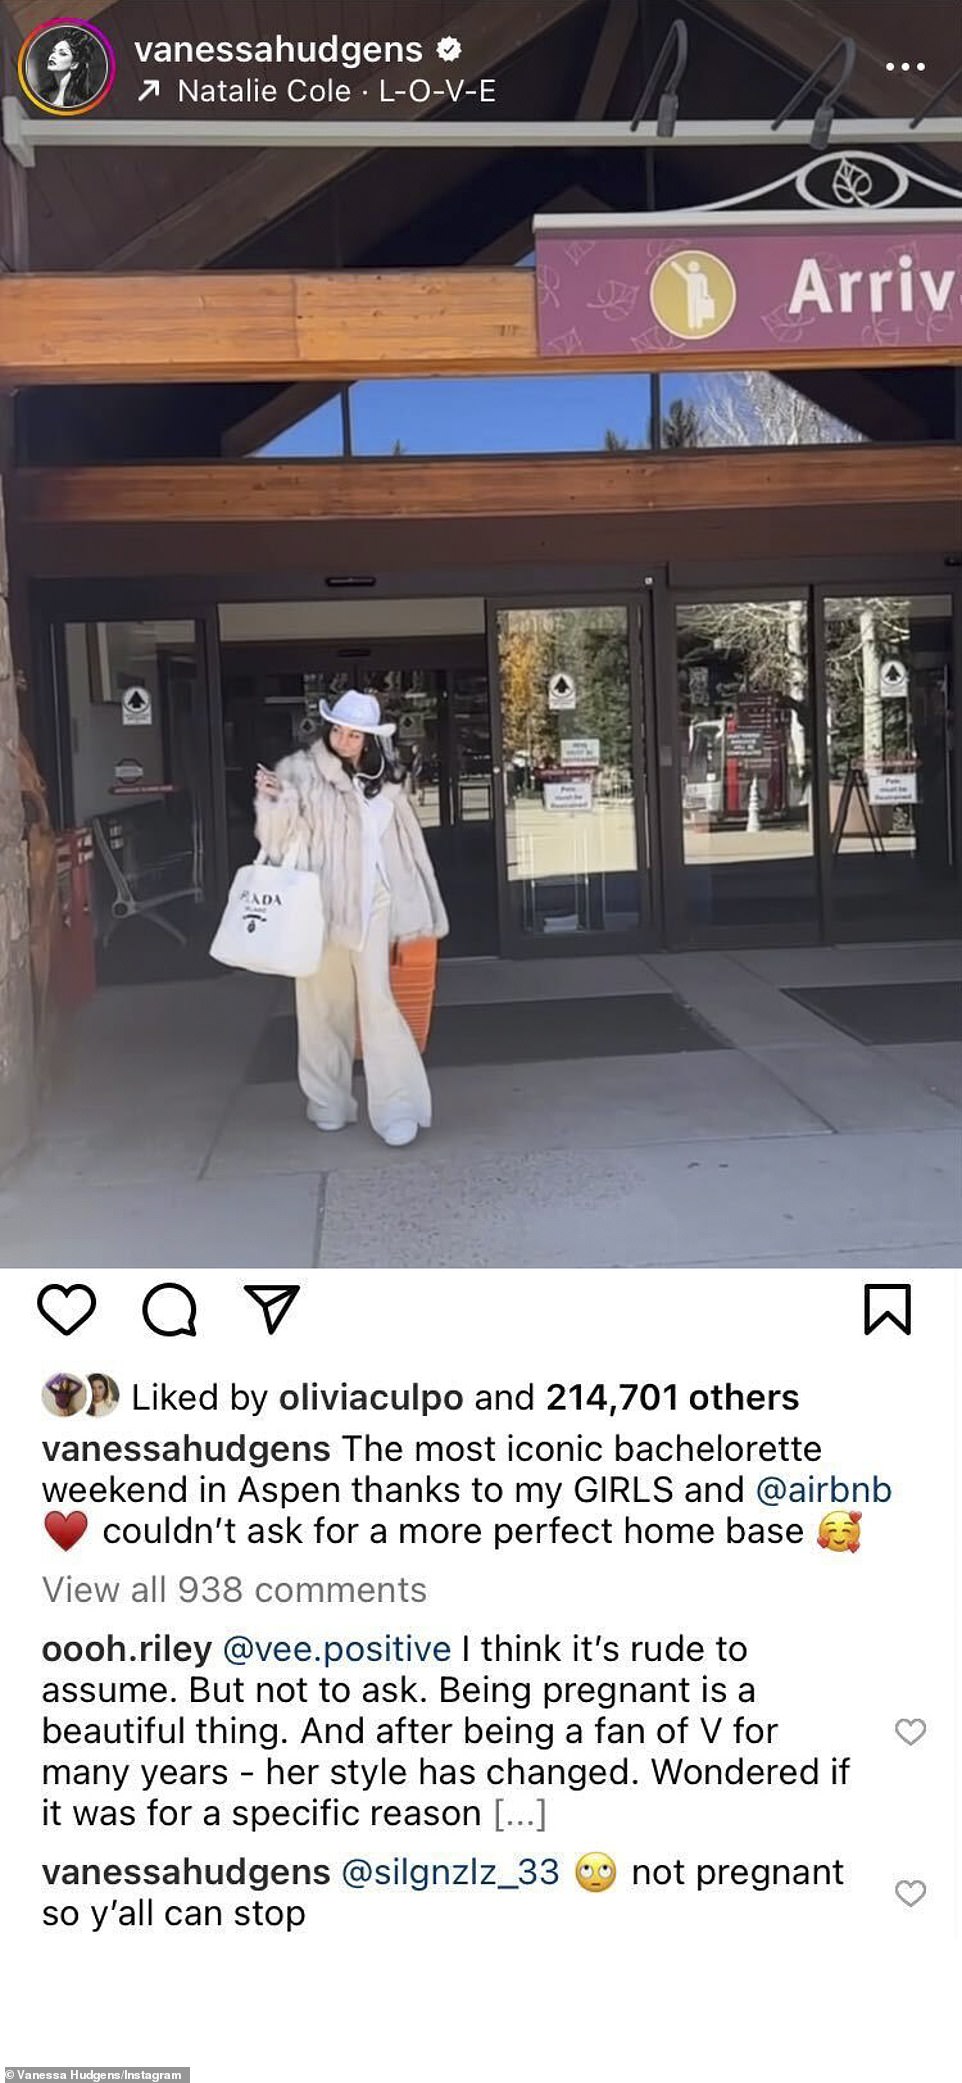 Bereits im Oktober hatte Vanessa den Spekulationen über eine Schwangerschaft ein Ende gesetzt, nachdem Instagram-Follower sie gefragt hatten, ob sie schwanger sei